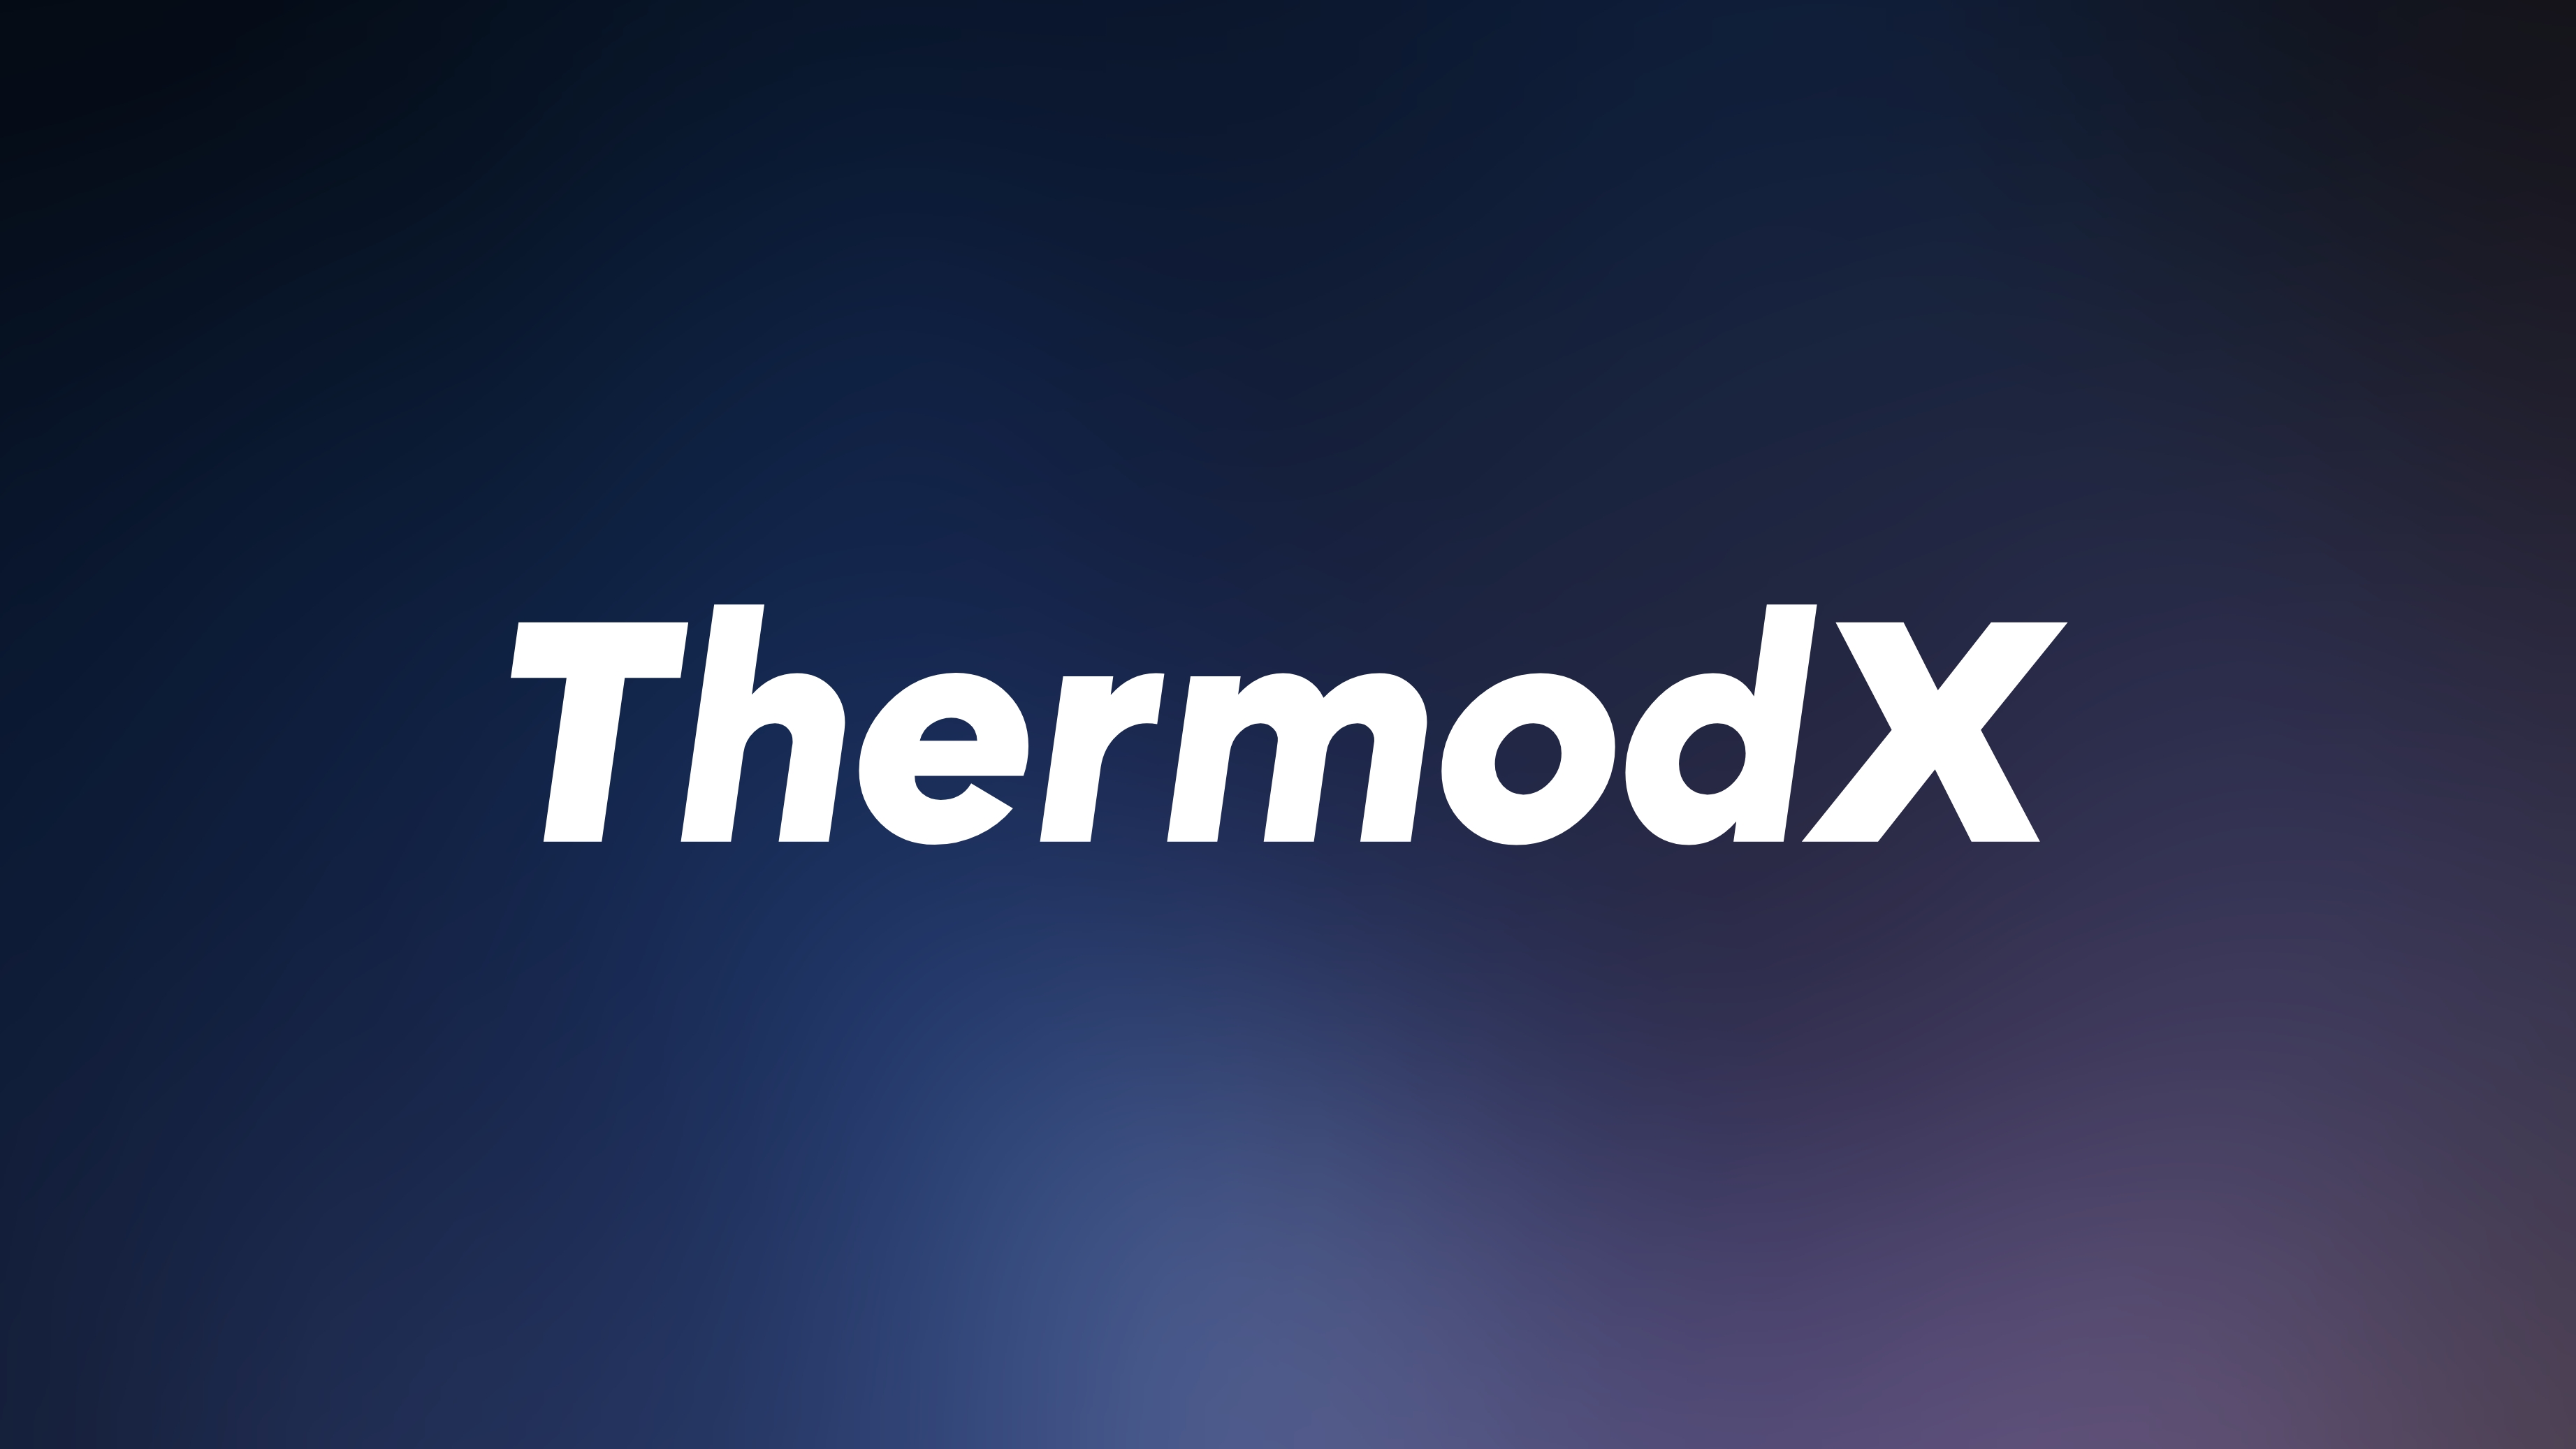 ThermodX